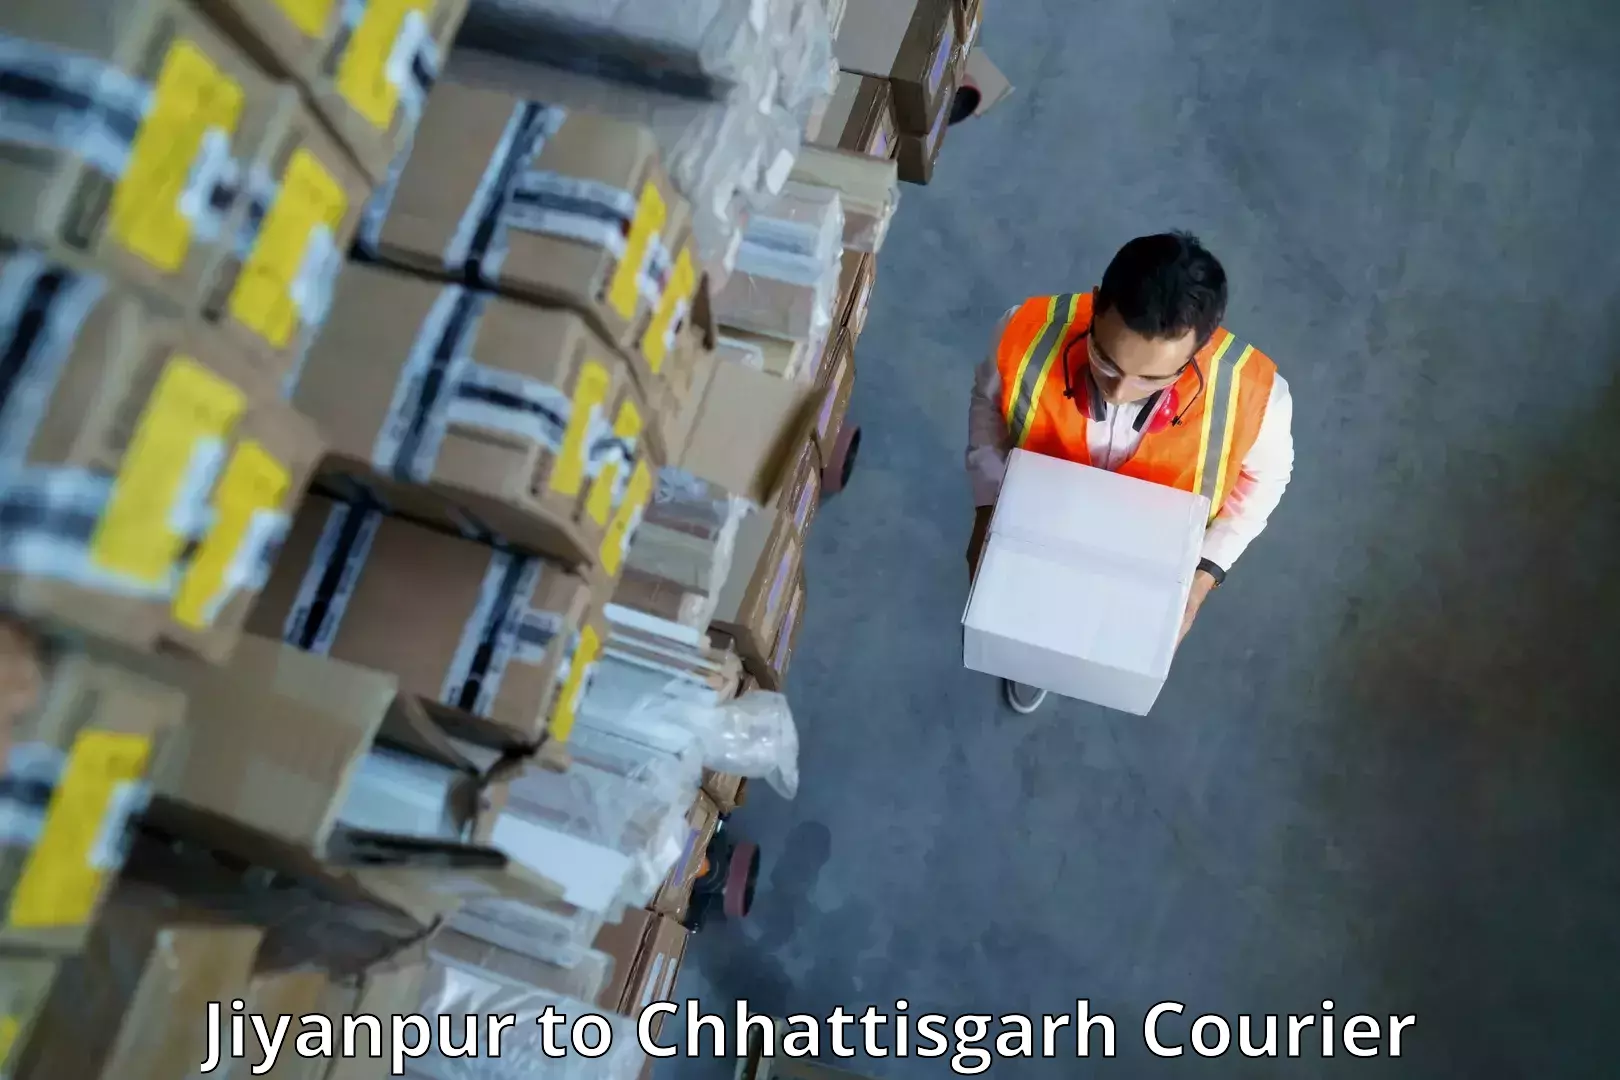 Fragile item shipping Jiyanpur to Mahasamund